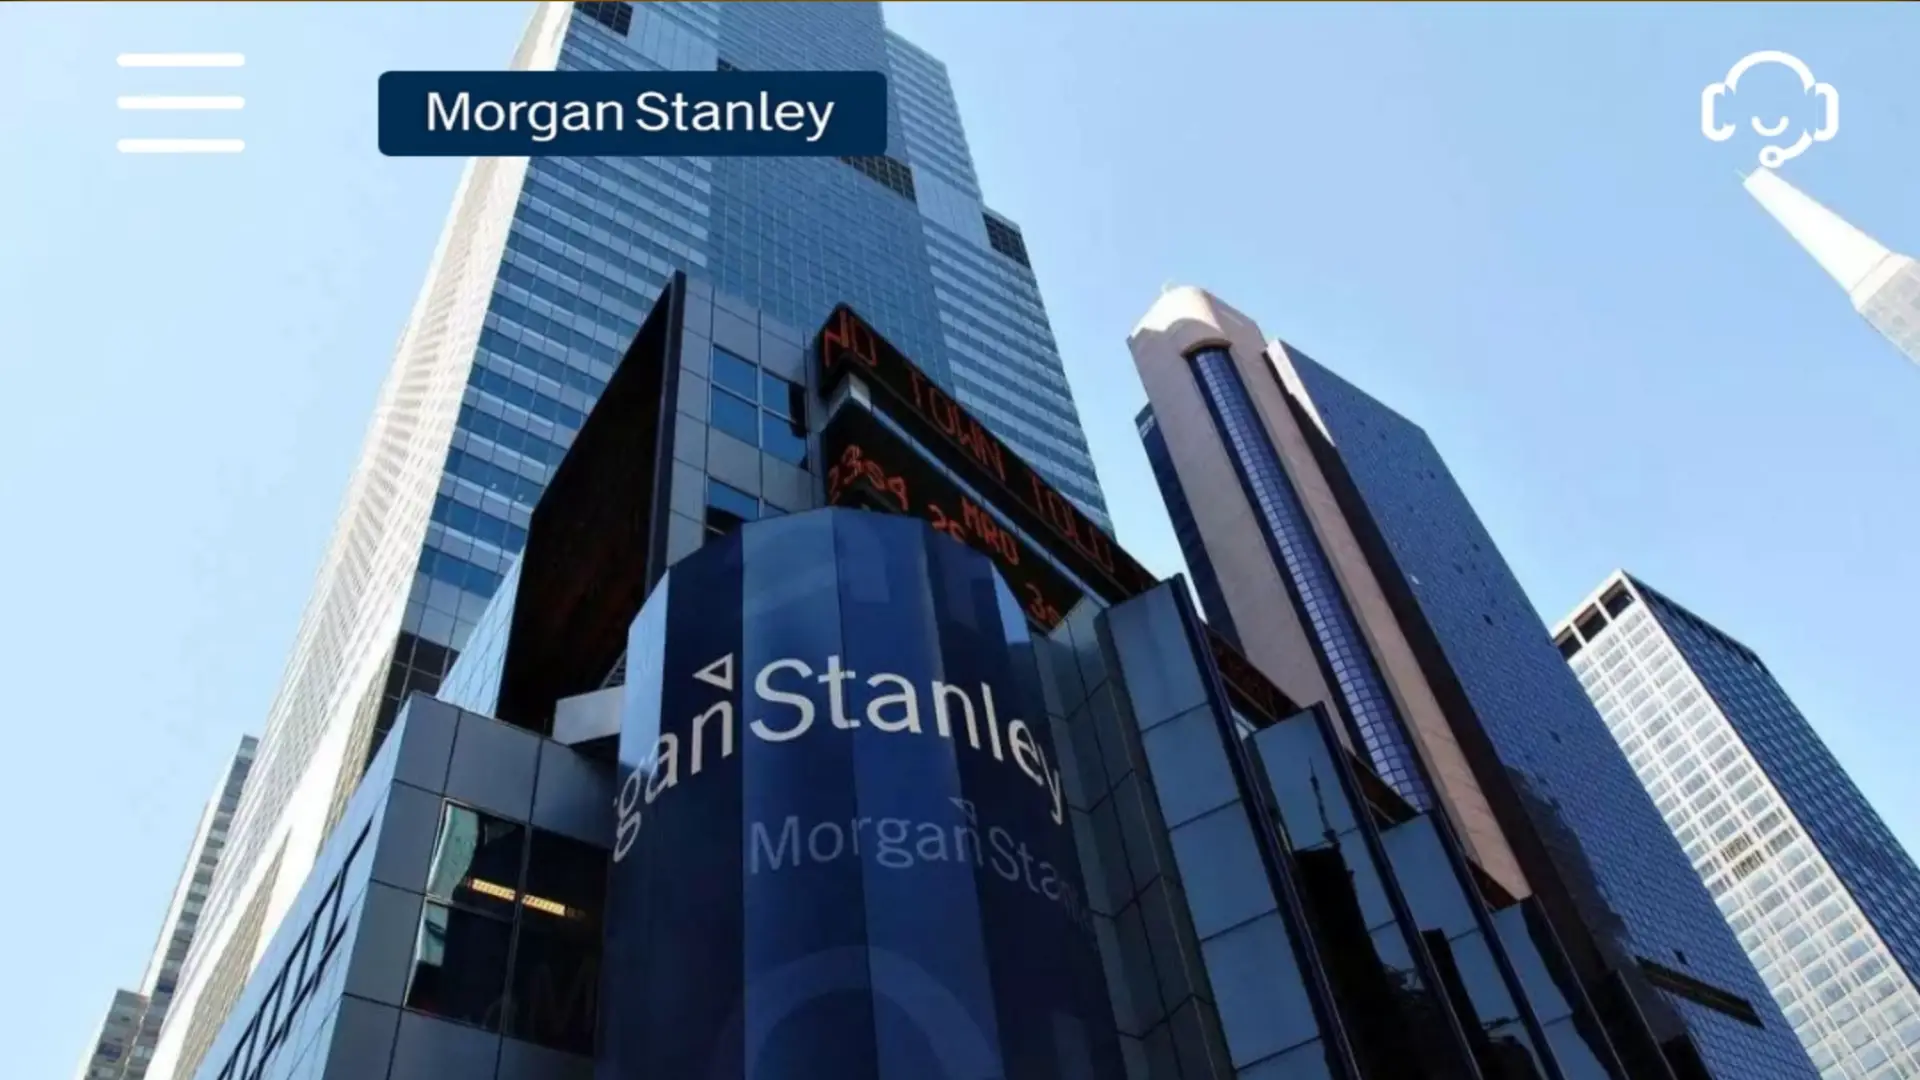 Morgan Stanley कंपनी के बारे में पुरी जानकारी